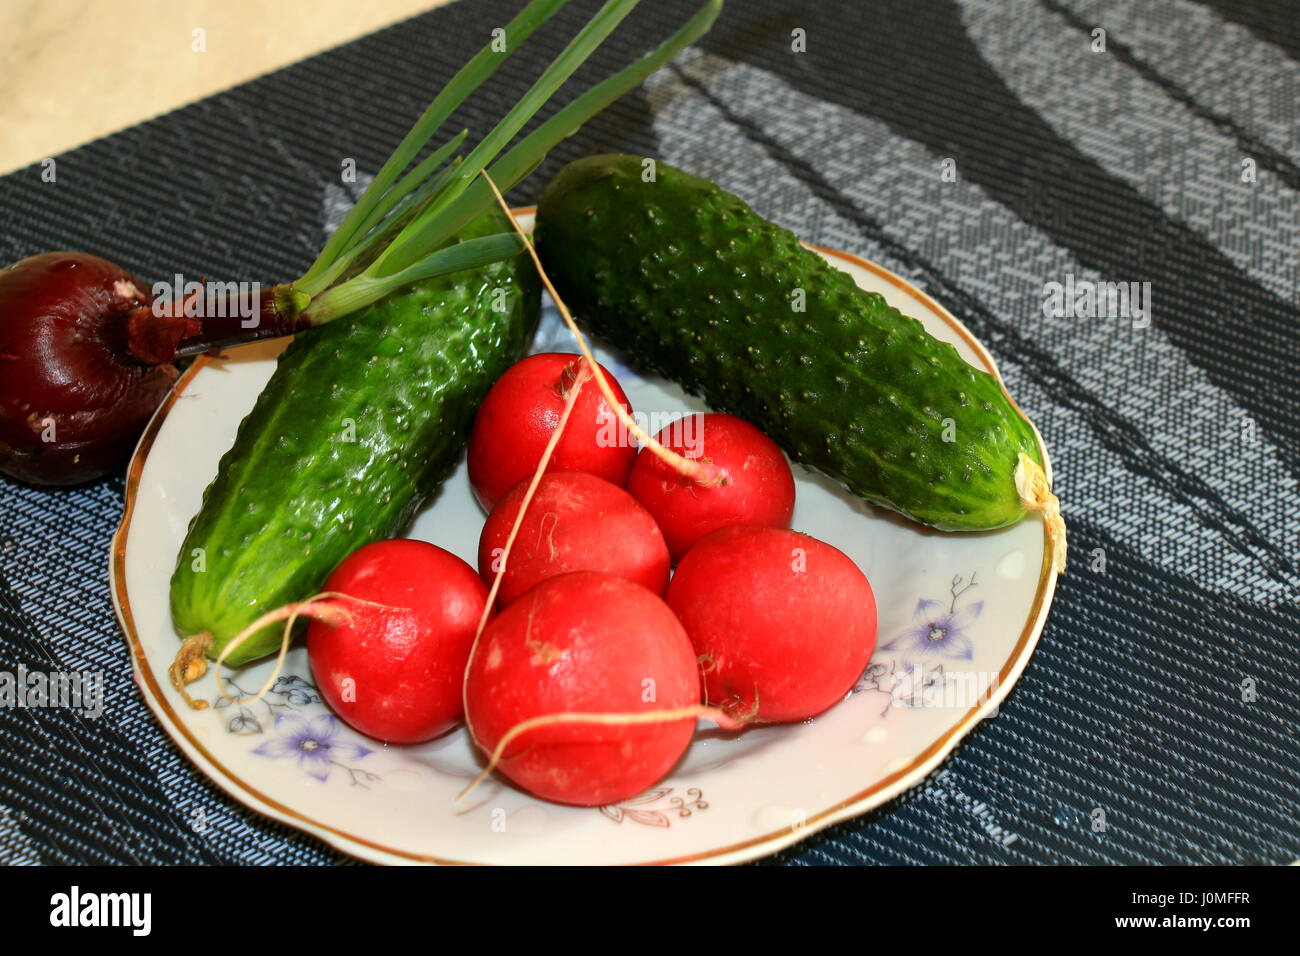 Il primo verdure. Fresco verde cetrioli e red ravanelli, cipolle - il tanto atteso verdure e vitamine dopo l'inverno. Essi aveva un buon odore fres Foto Stock